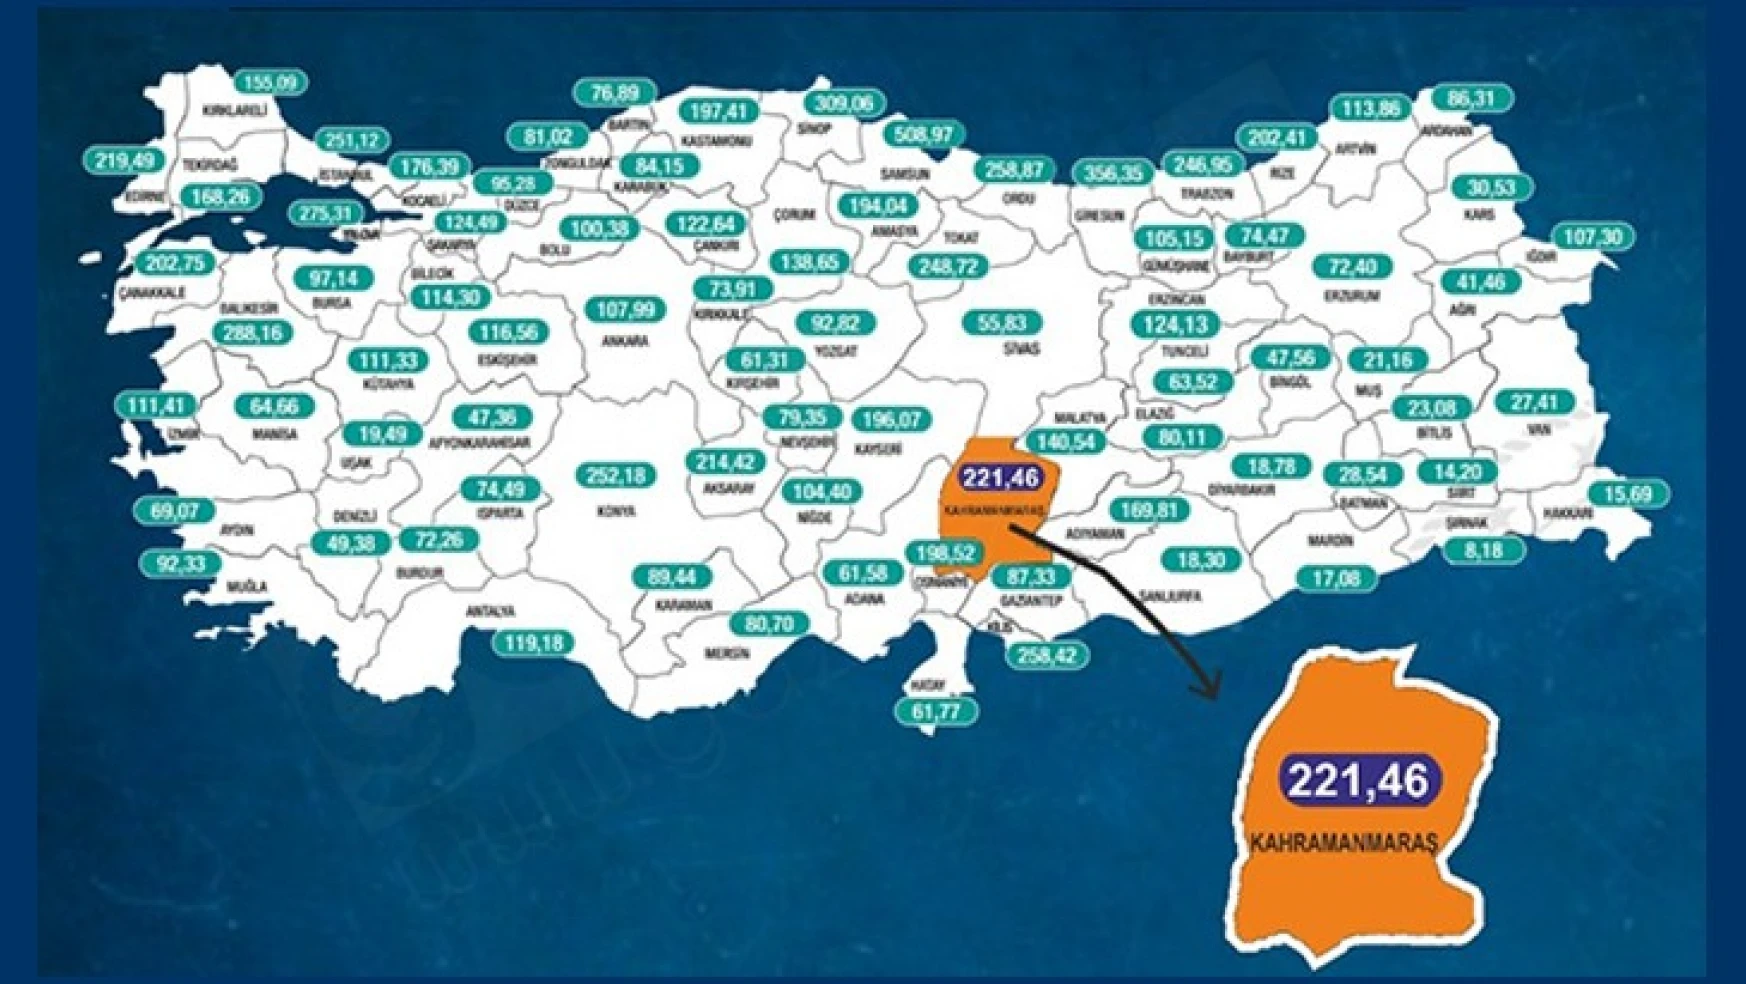 Kahramanmaraş'ta vaka oranı 221,46'ya çıktı